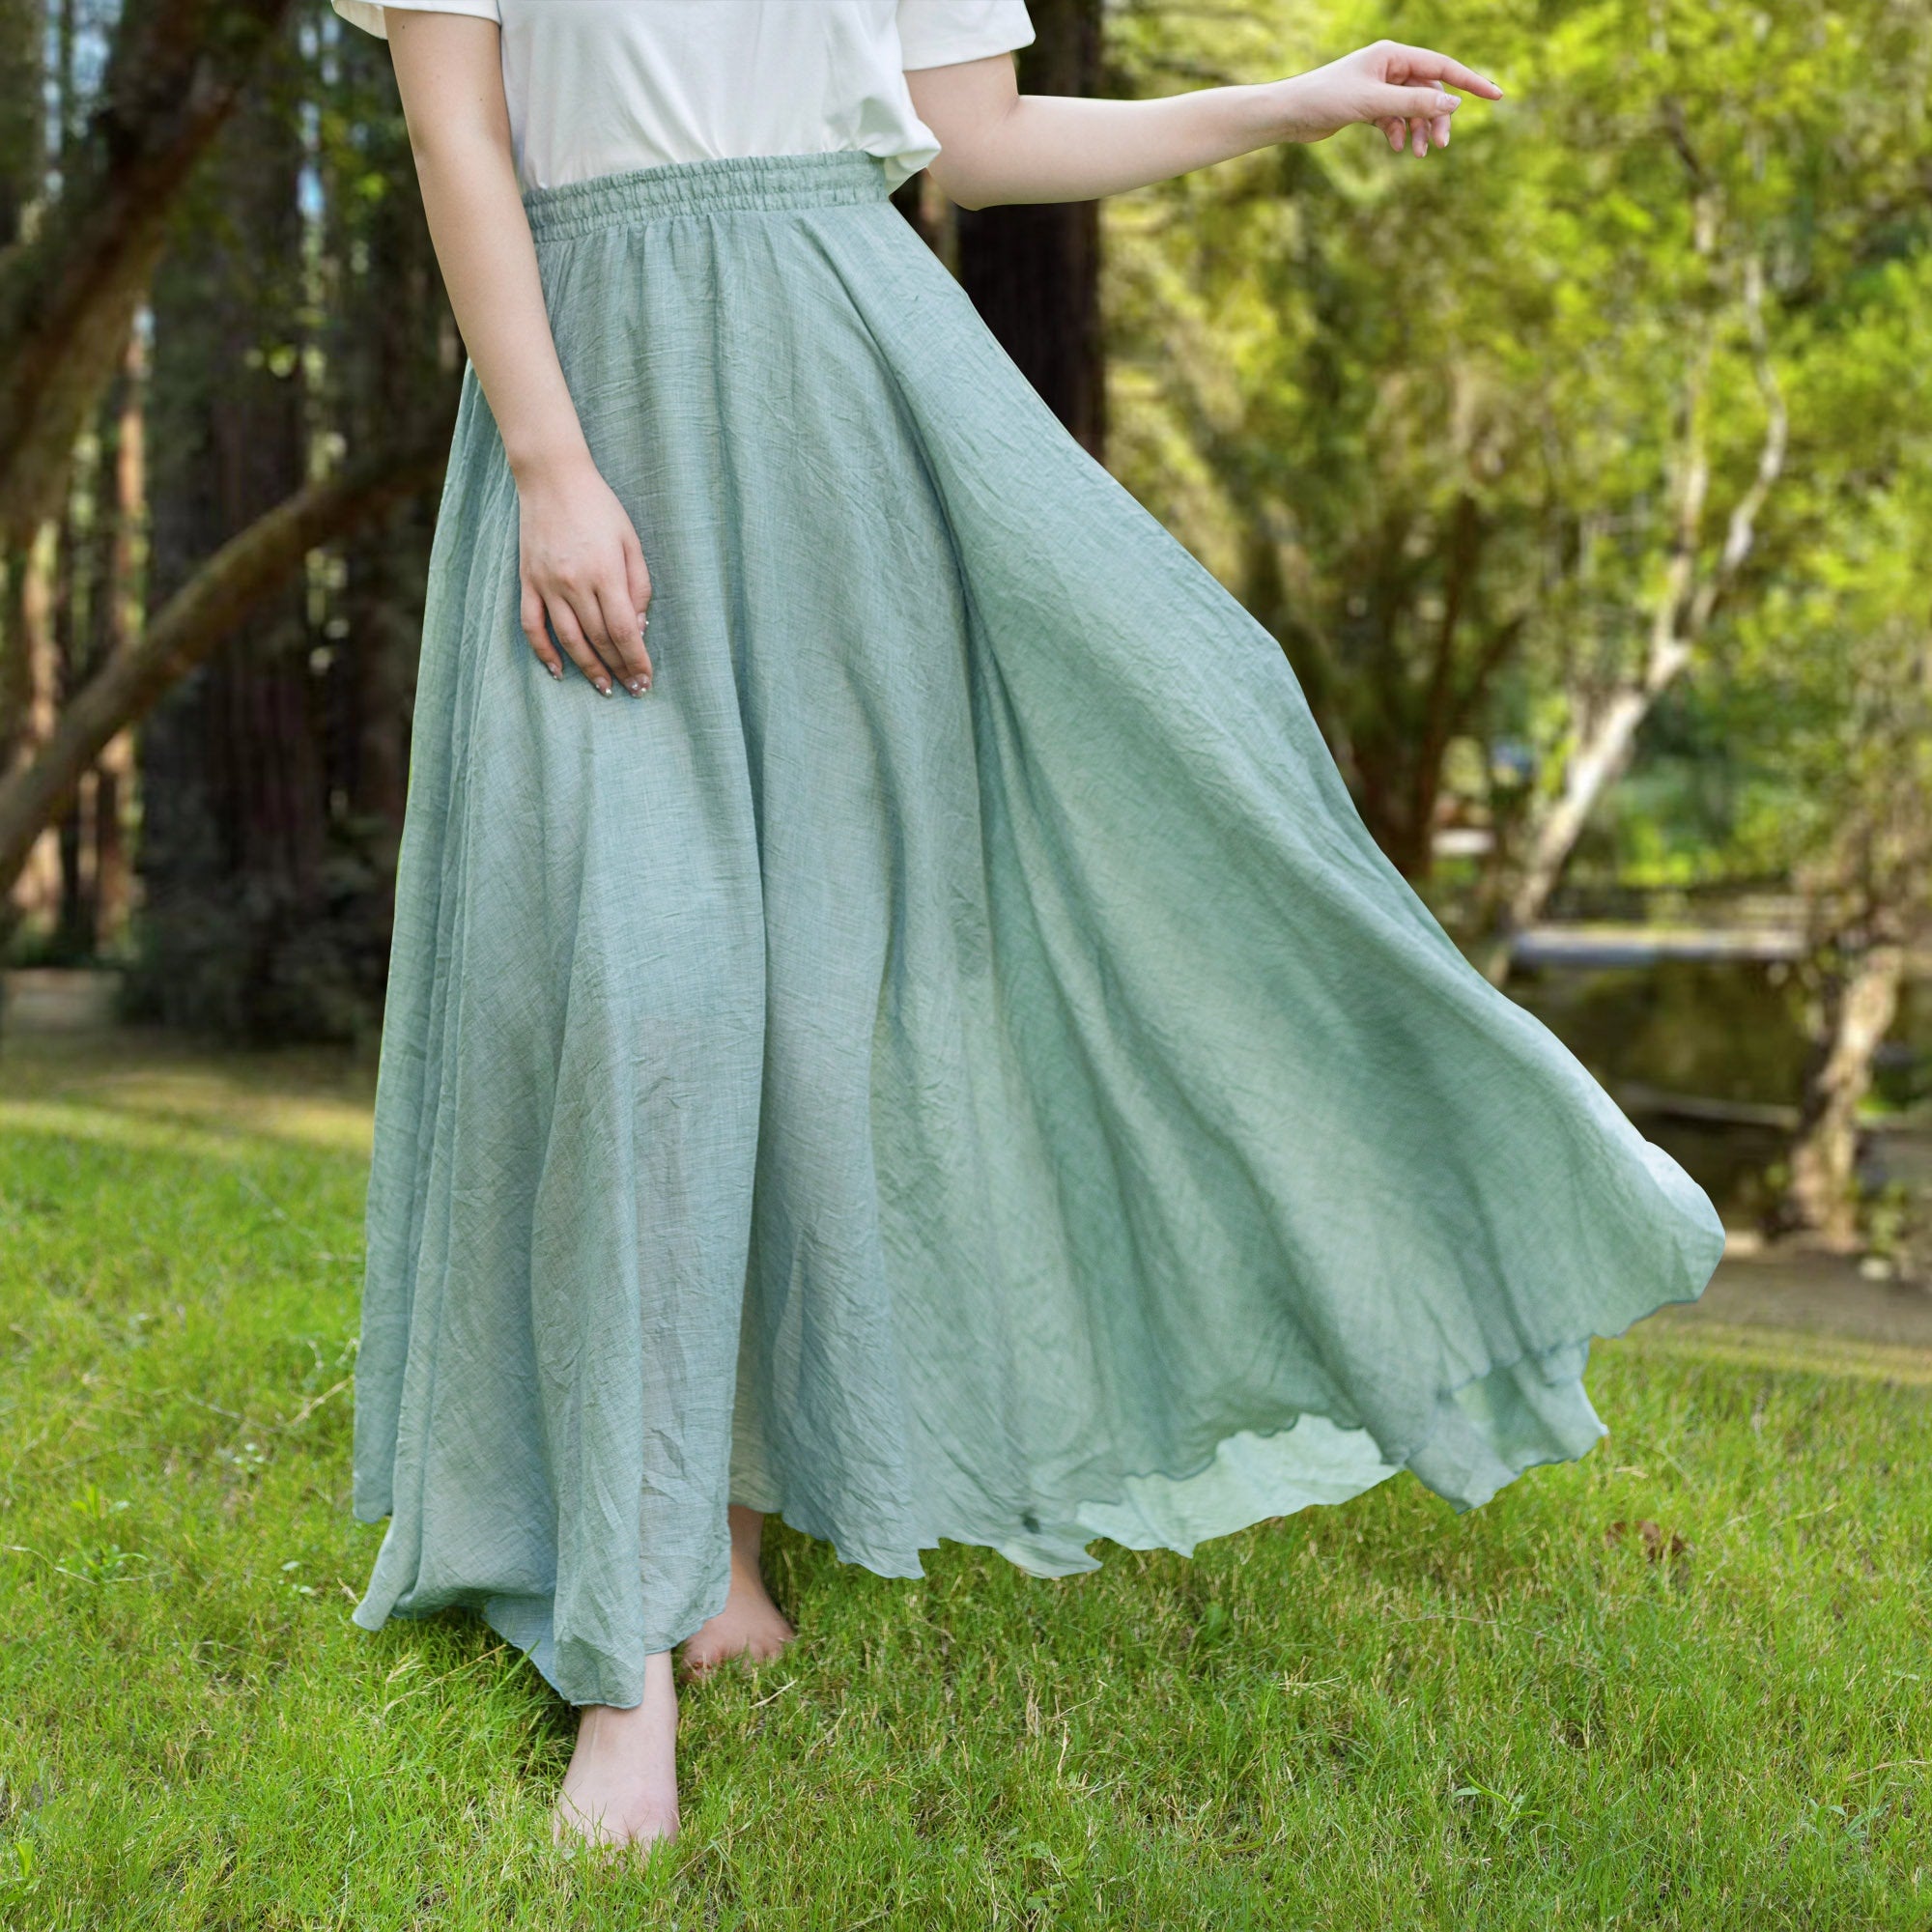 Cotton linen skirt soft and flowing linen skirt travel skirt beach skirt gift for her Light green ，Pockets and waist can be customized